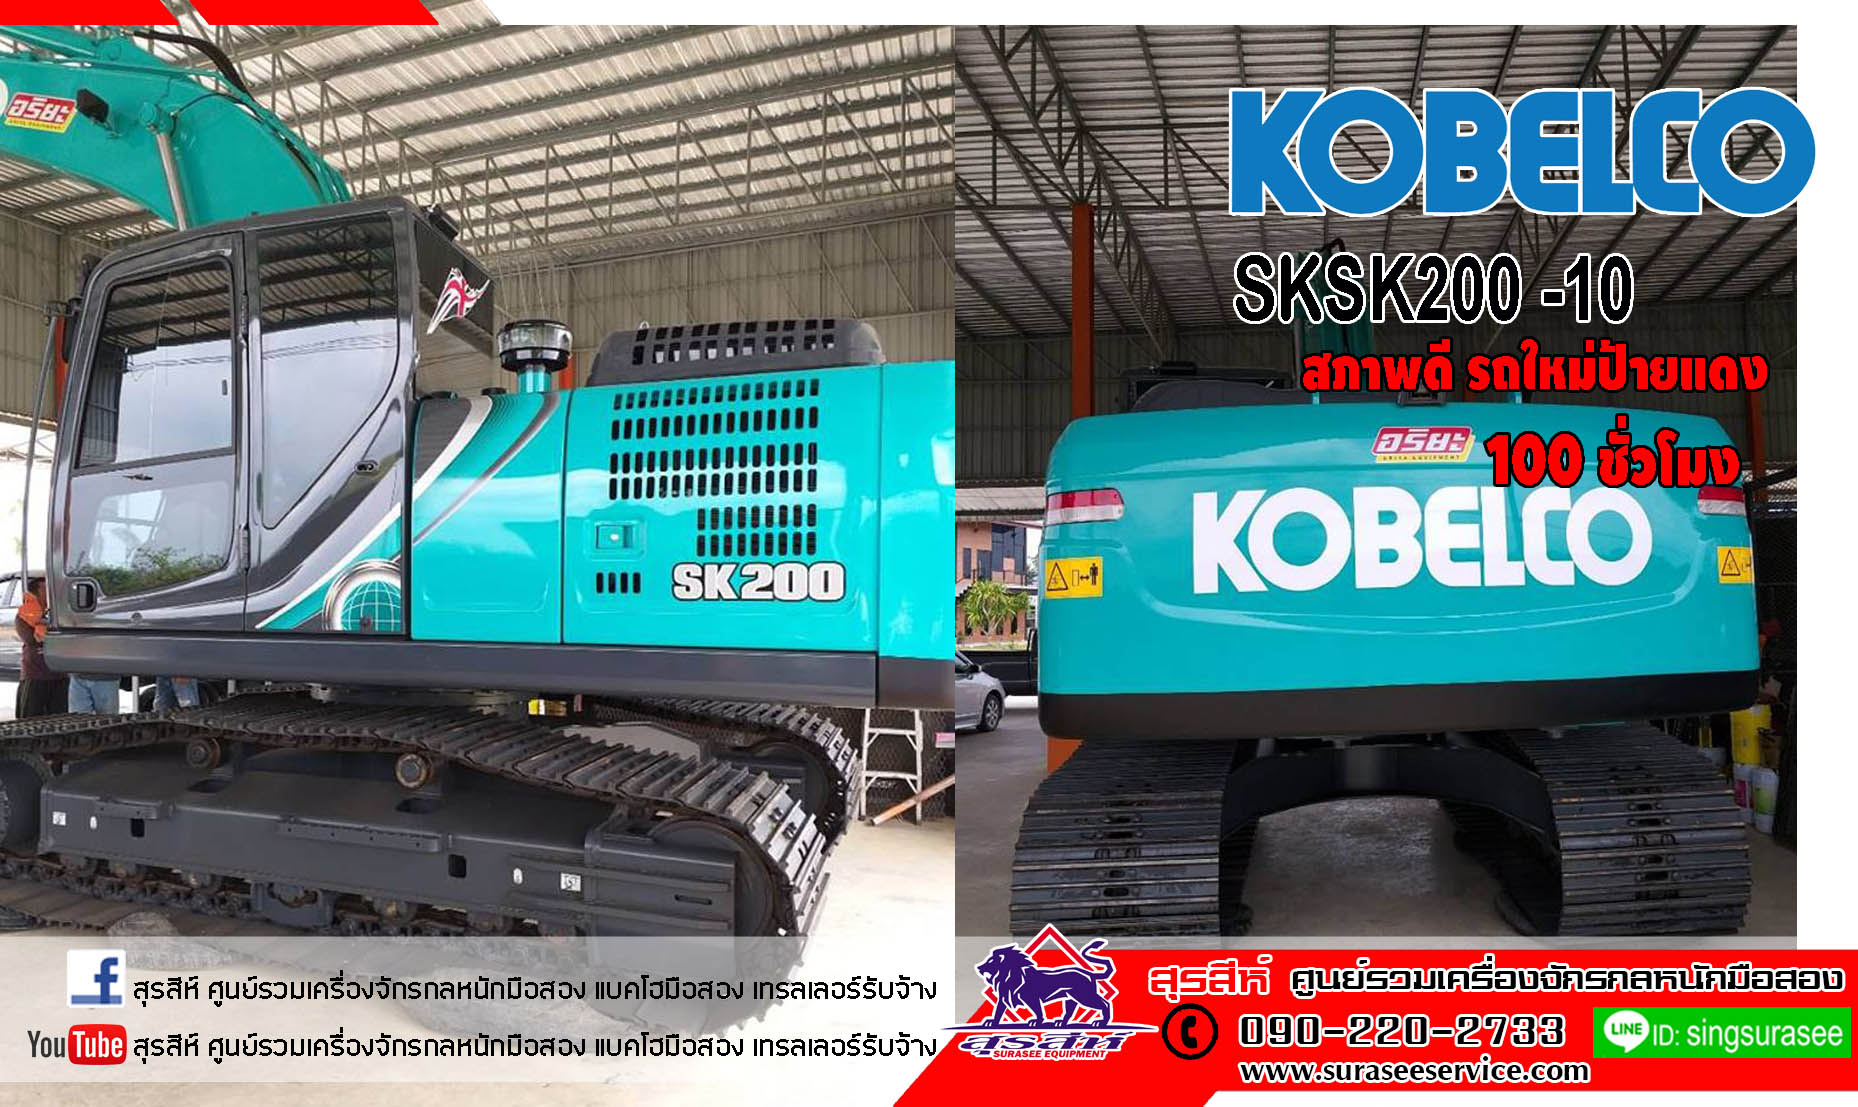 รถขุดมือสอง(น้องรถใหม่) KOBELCO SK200-10 ใช้งานเพียง 100 ชั่วโมง